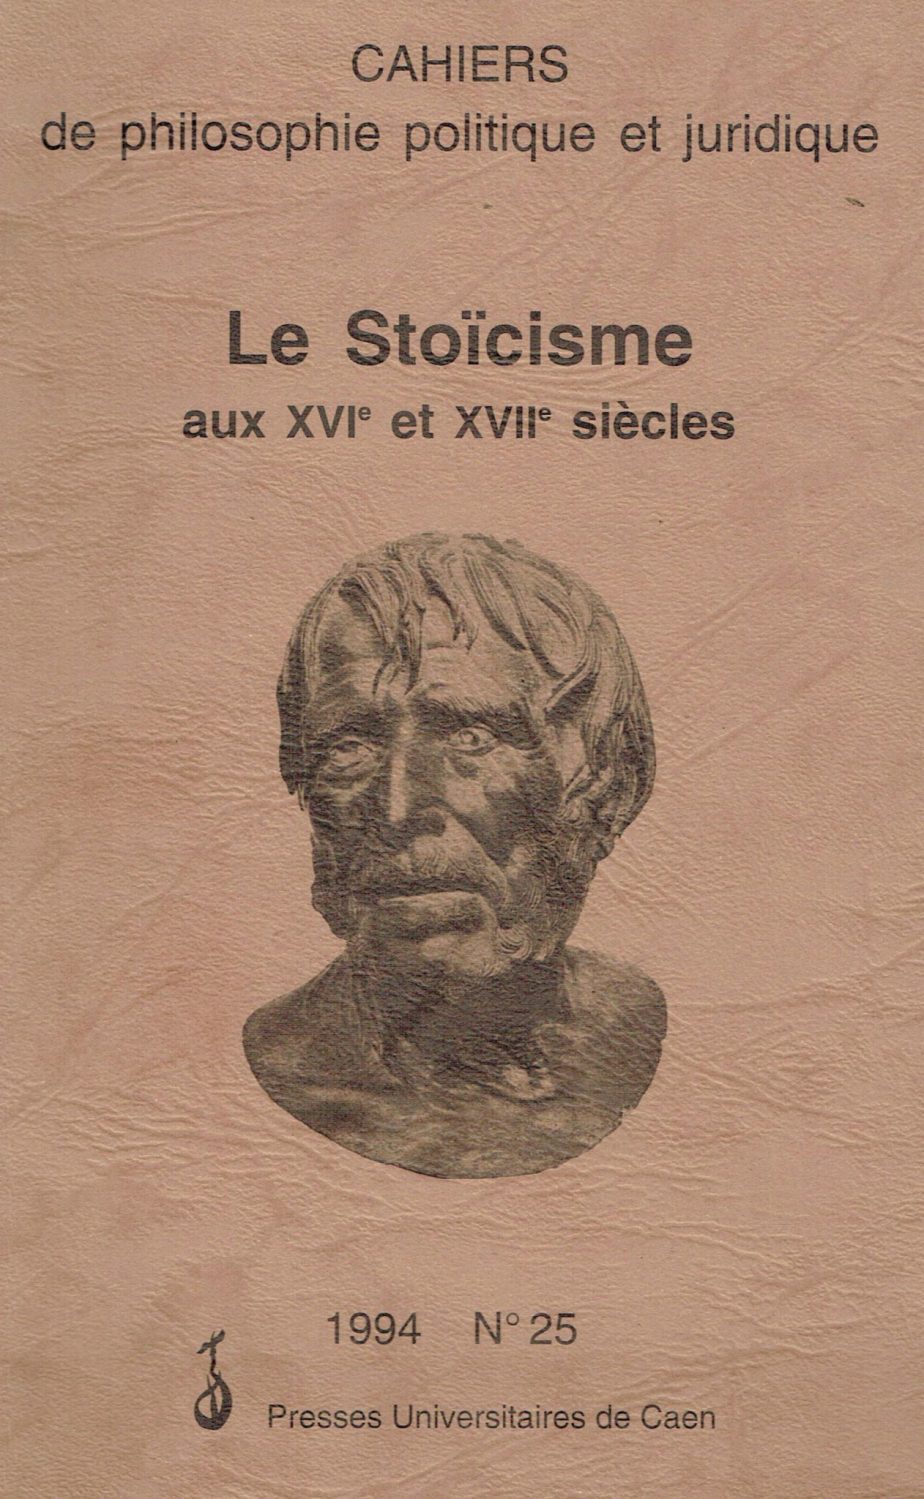 Cahiers de philosophie politique et juridique. Le stoicisme aux XVI e XVII siècles